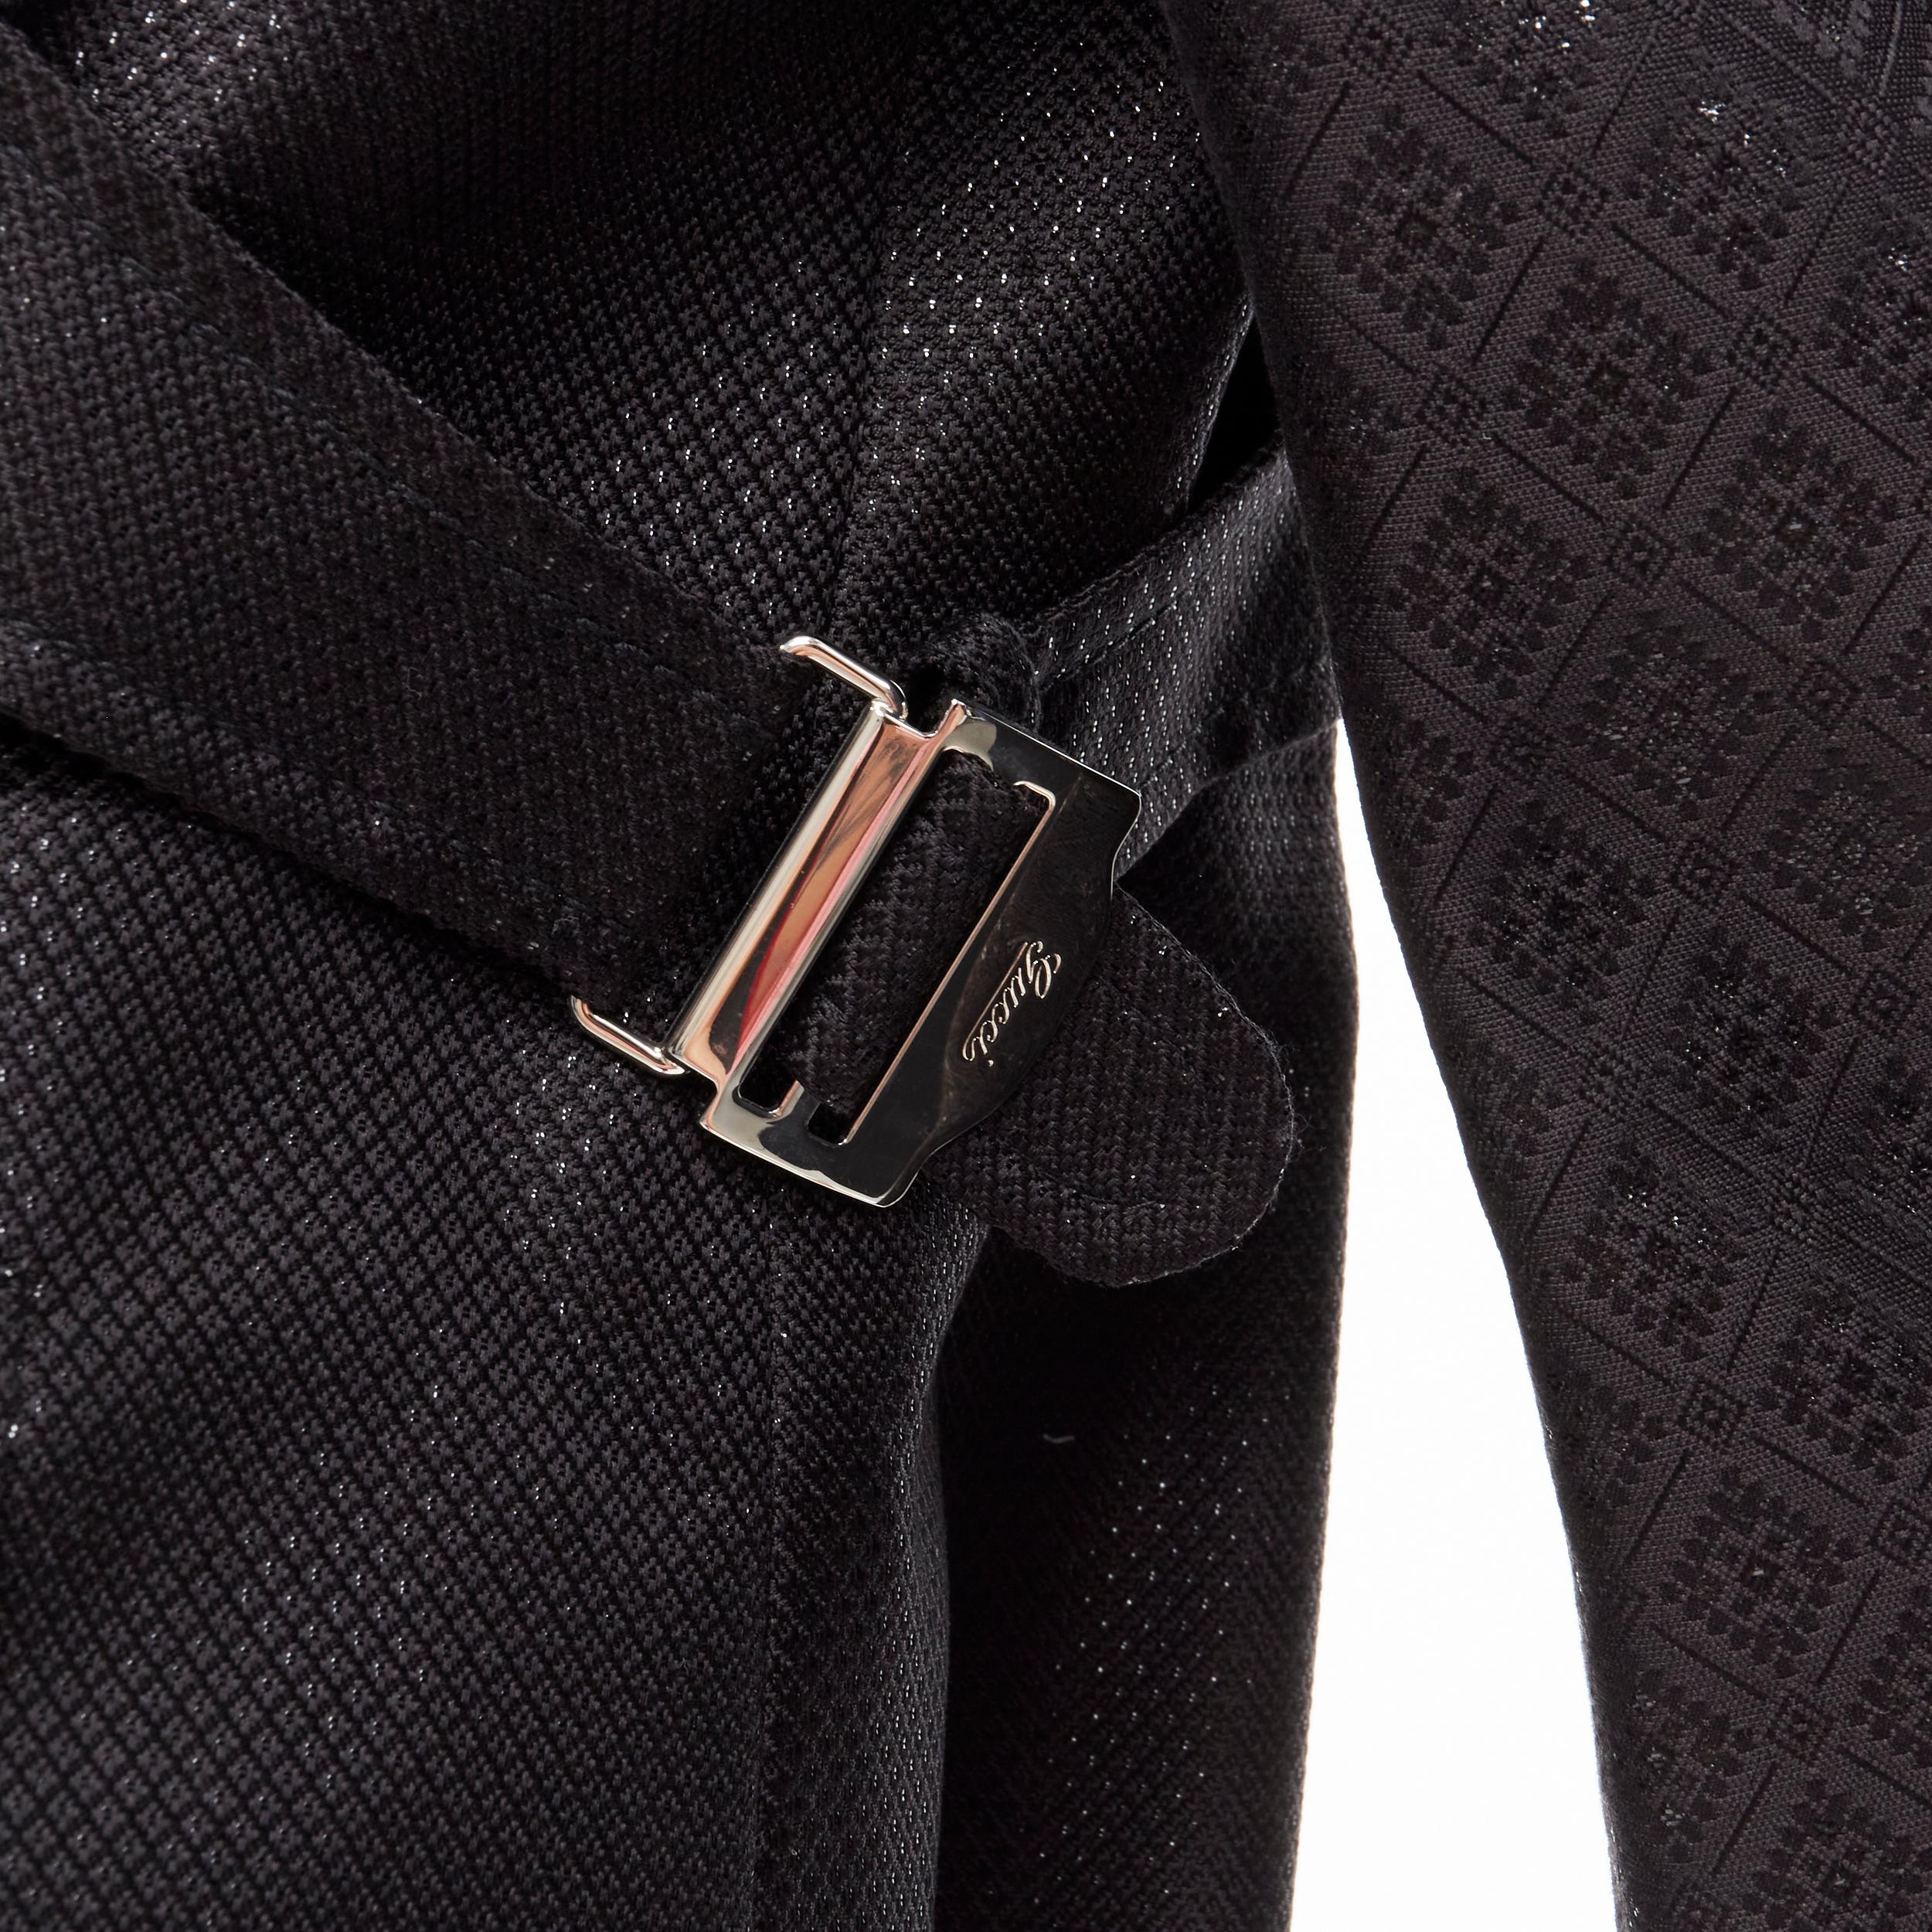 GUCCI 2006 Vintage noir métallique brocart oriental veste à double boutonnage IT44 M 
Référence : GIYG/A00162 
Marque : Gucci 
Collection : 2006 Runway 
Matériau : Coton 
Couleur : Noir
Motif : Floral 
Fermeture : bouton 
Détail supplémentaire :